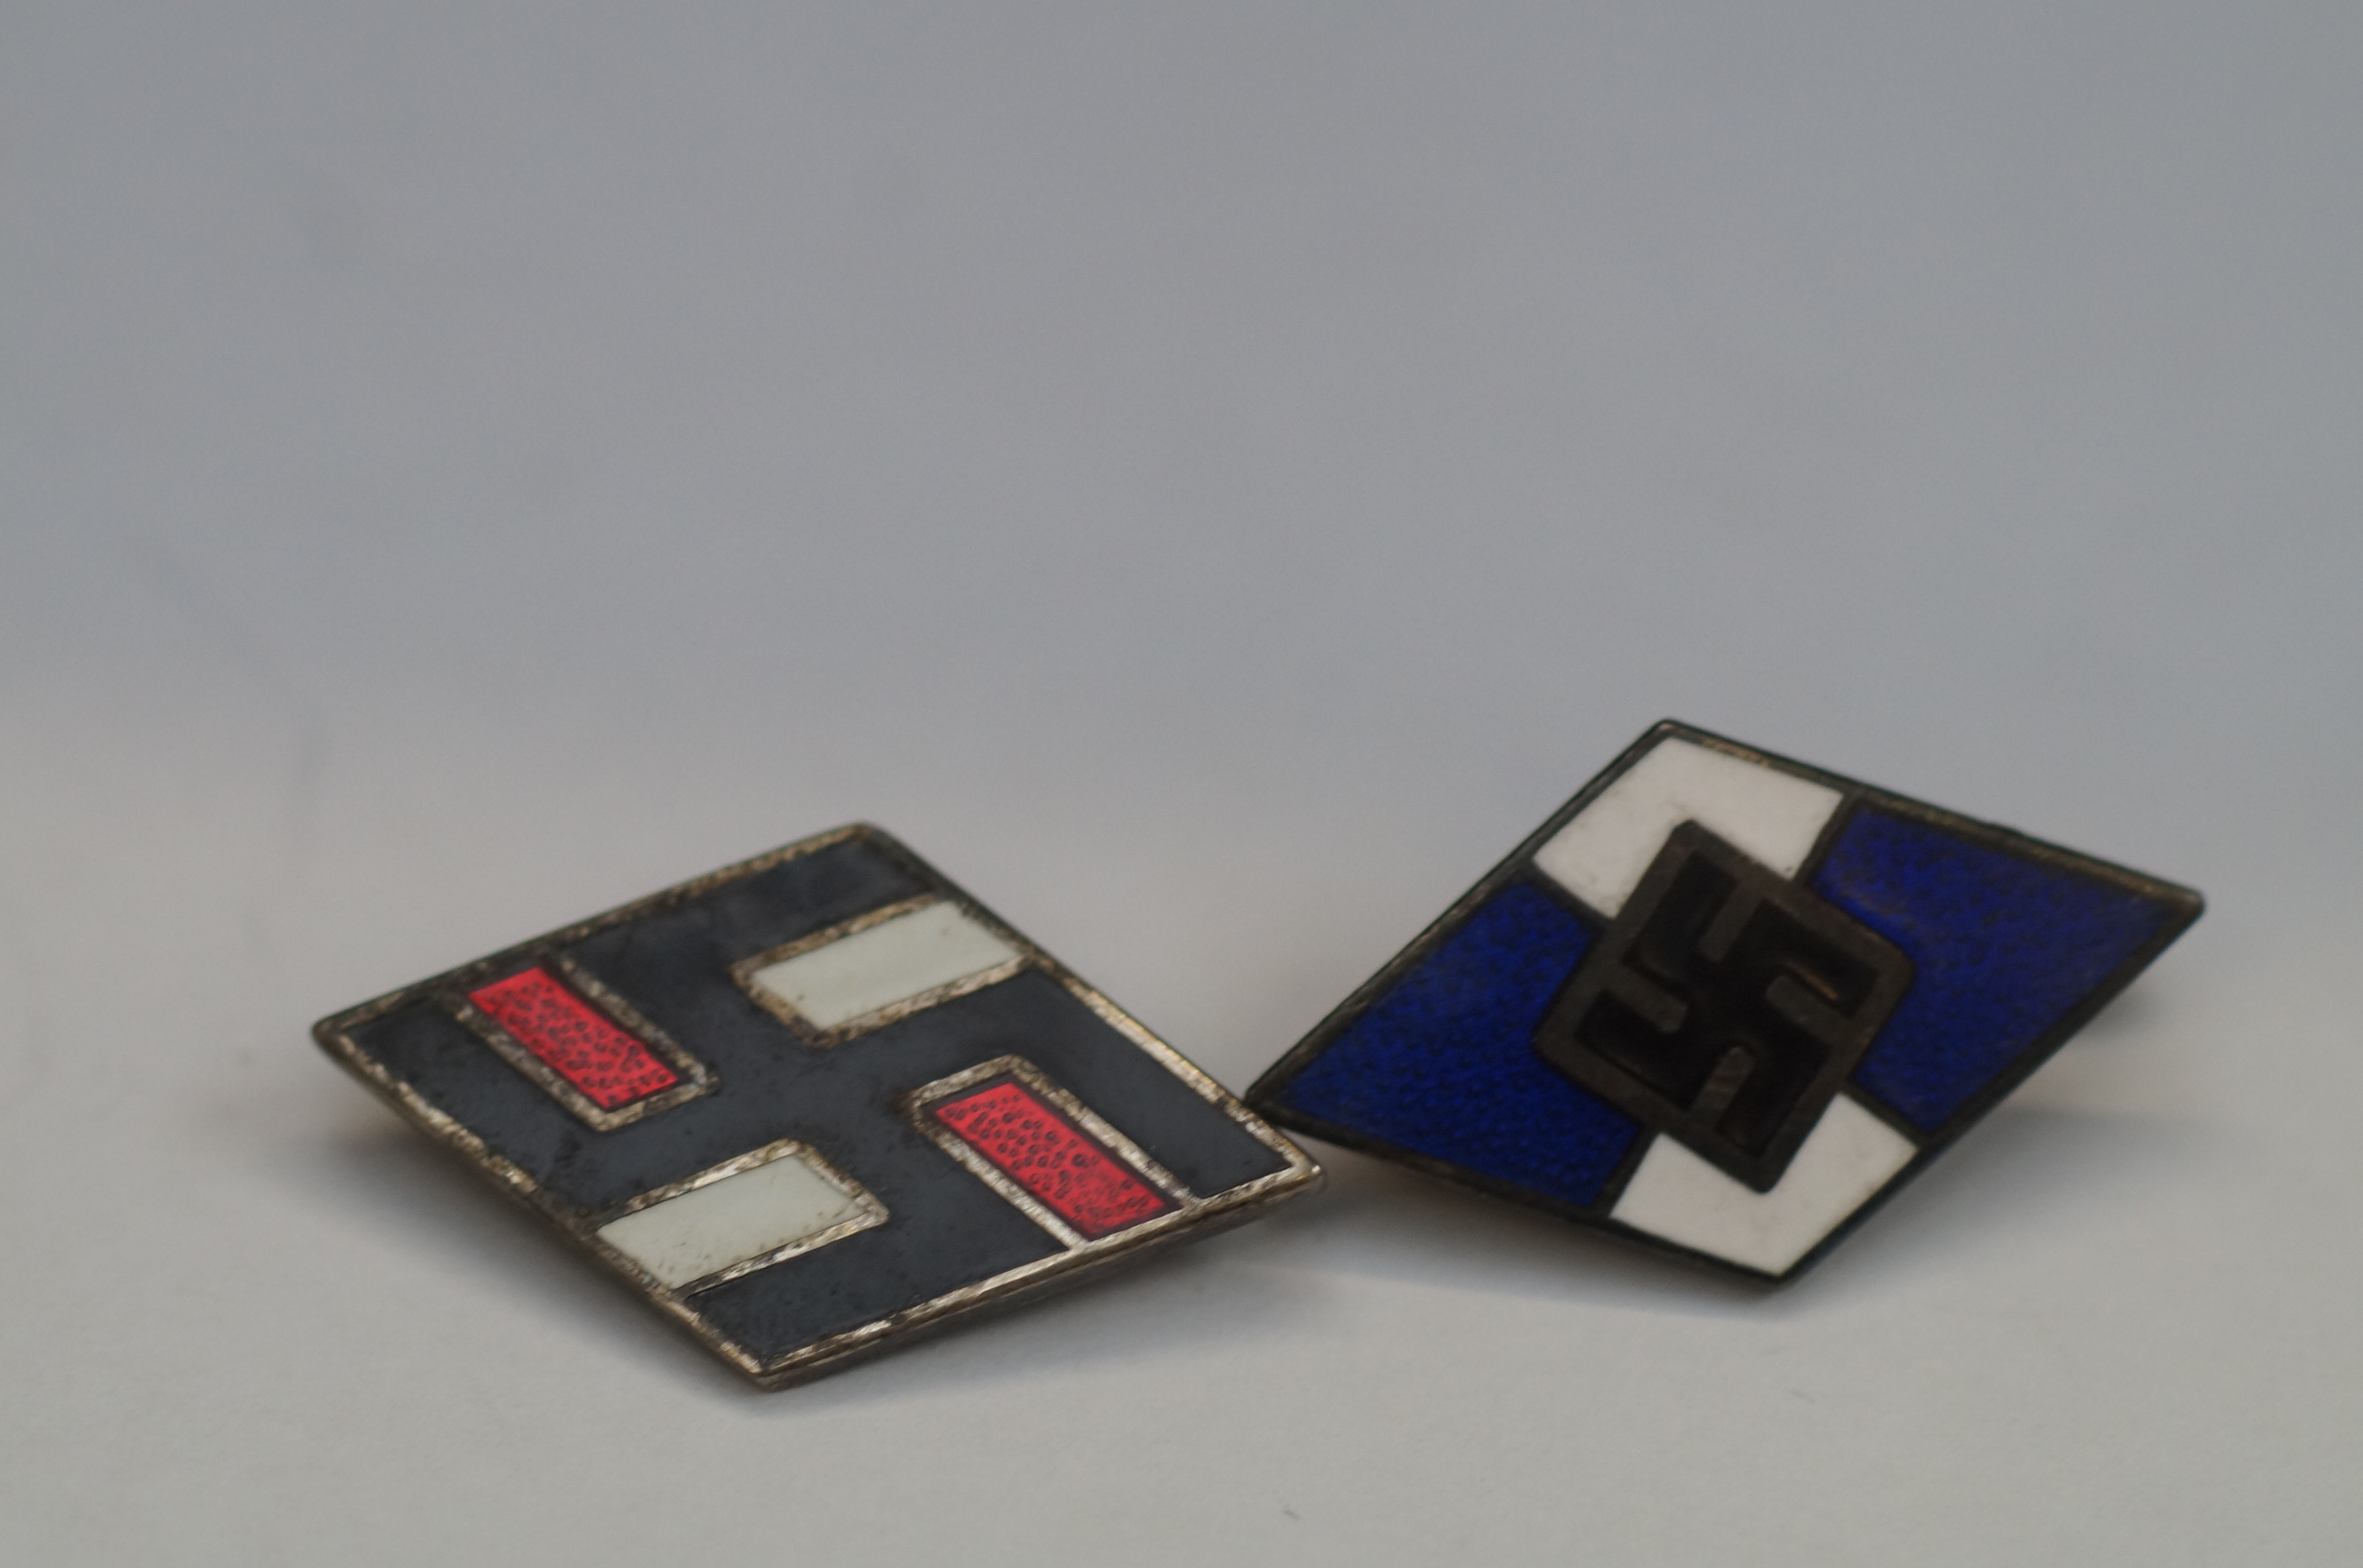 2 German badges